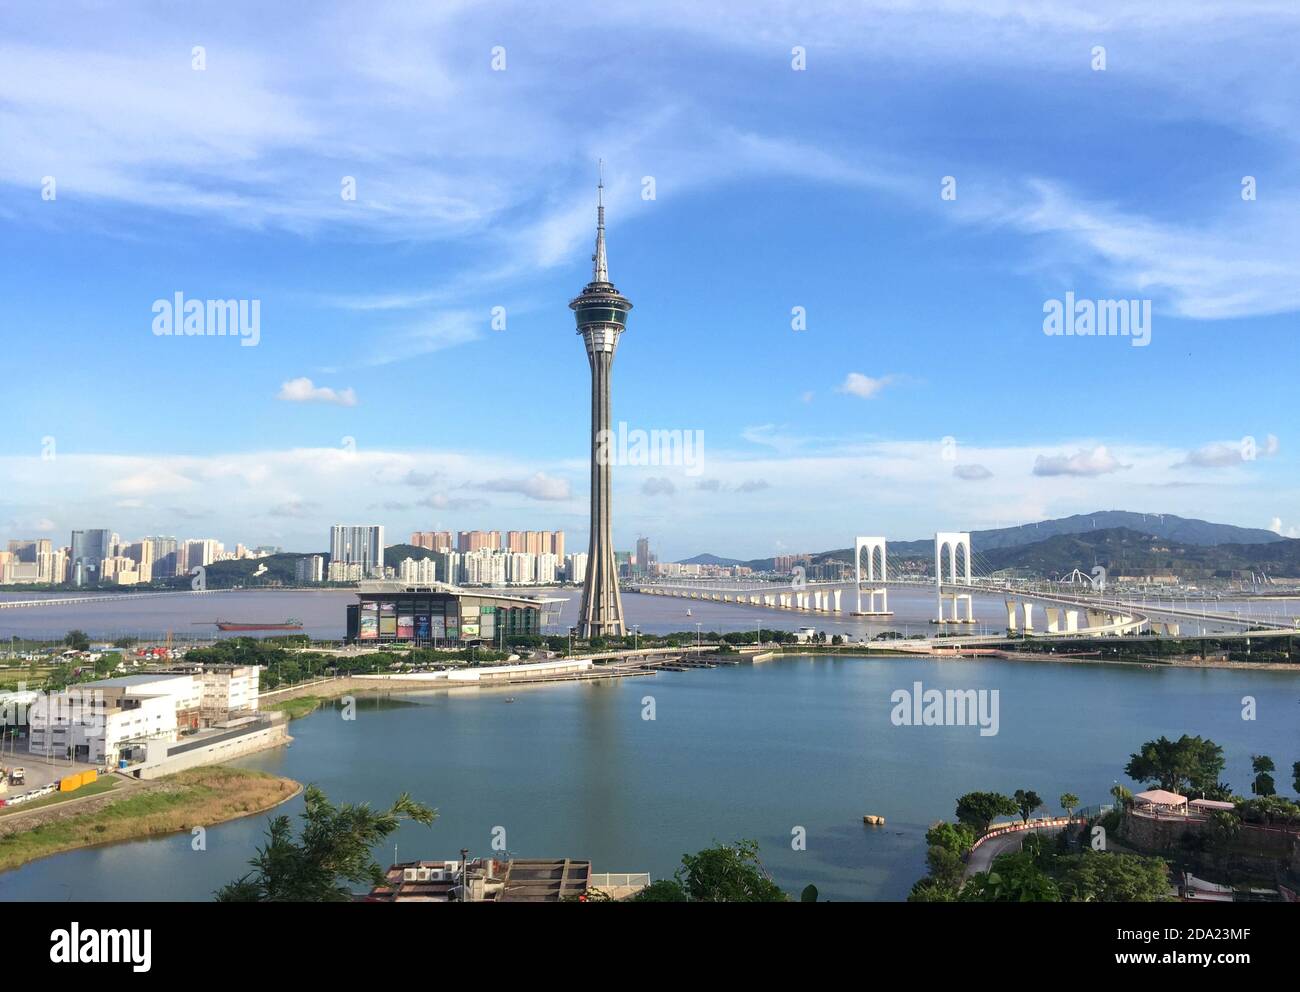 Stadtbild von Macau mit berühmten Reisenden Turm unter blauem Himmel in der Nähe von Fluss in Macao, Asien. Stockfoto